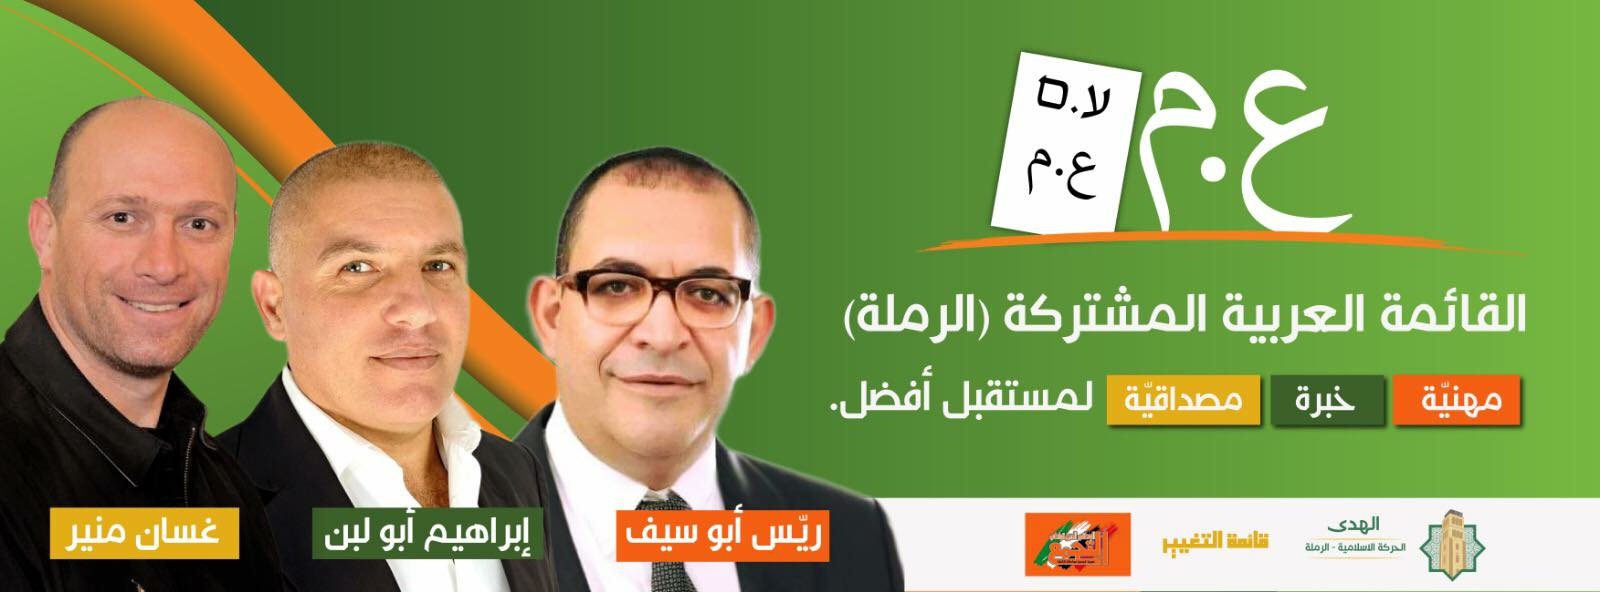 الرملة: الإعلان عن تشكيل القائمة العربية المشتركة لخوض انتخابات البلدية 